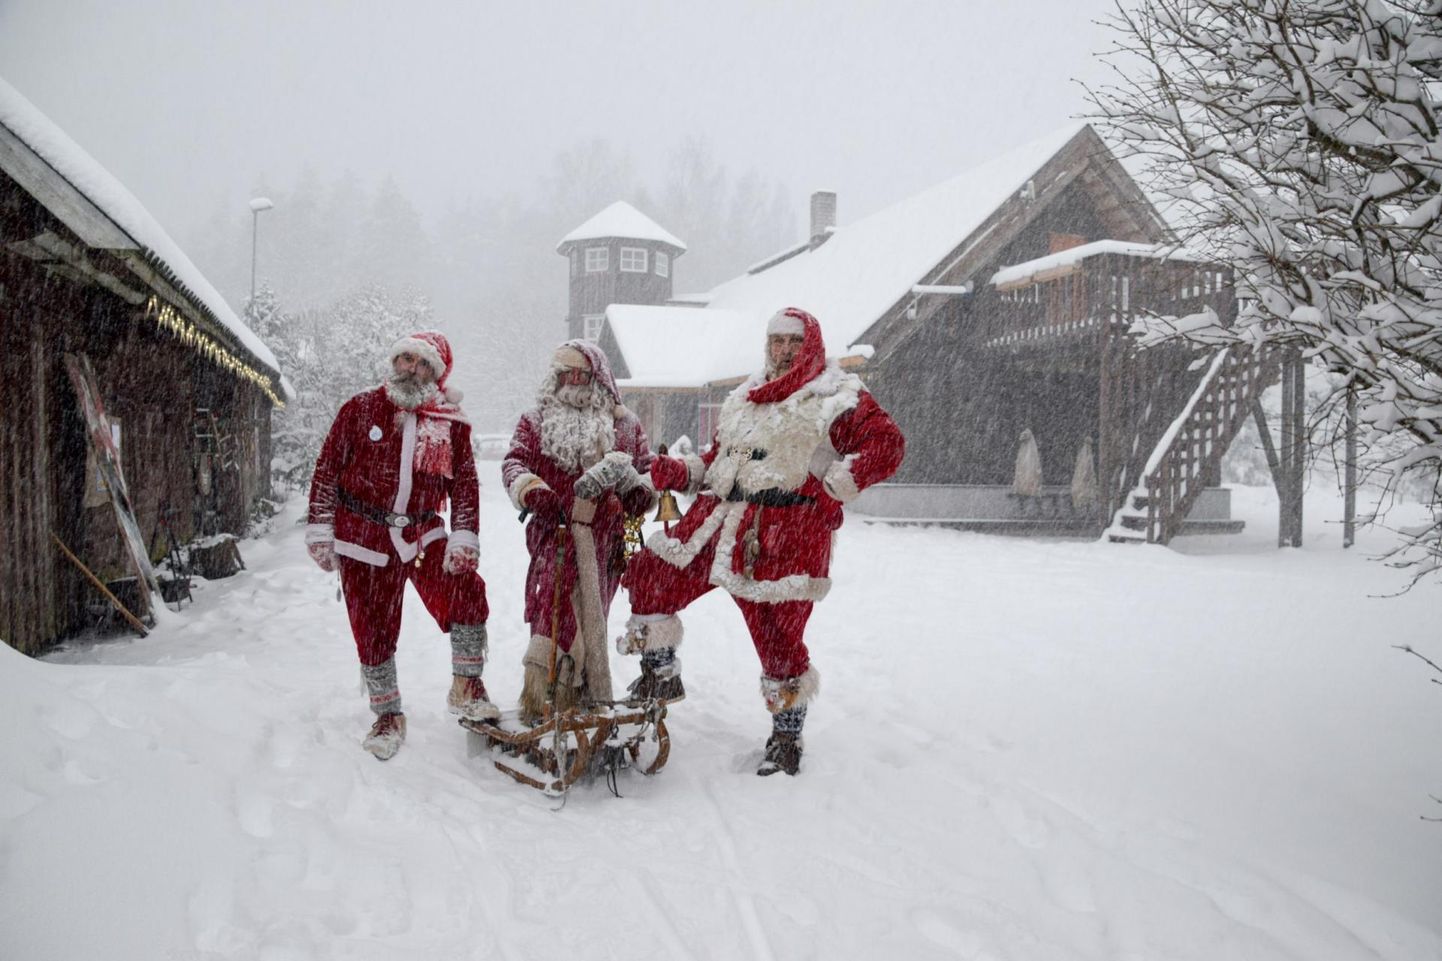 Ajalooline Korstna talu on endale nimeks saanud Jõuluvana Korstna talu, sest seal pesitsevad jõuluvanad aastaringselt.